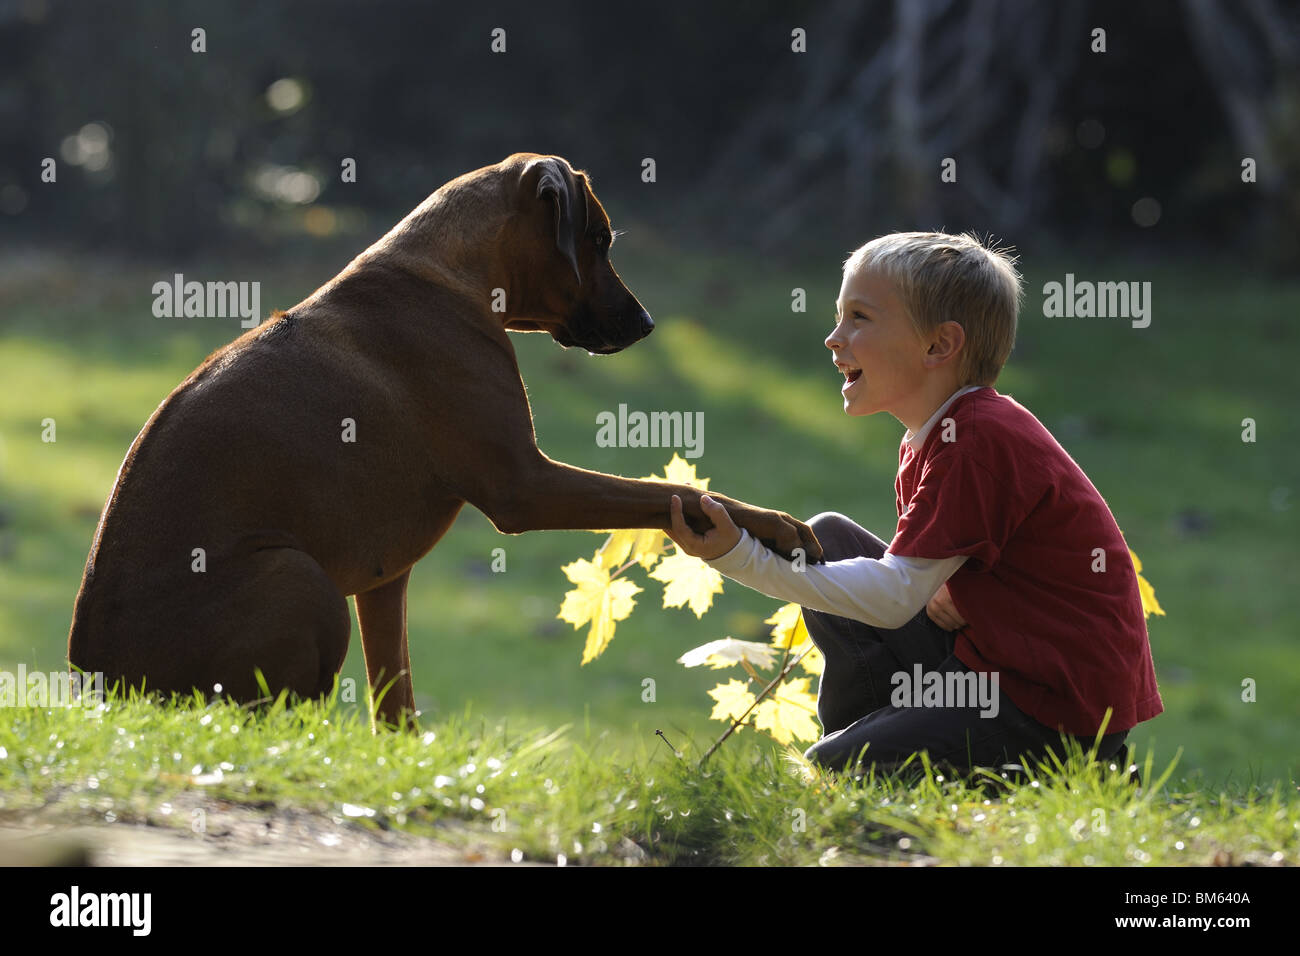 Le Rhodesian Ridgeback (Canis lupus familiaris). Jeune garçon assis avec chien adulte sur une pelouse. Banque D'Images